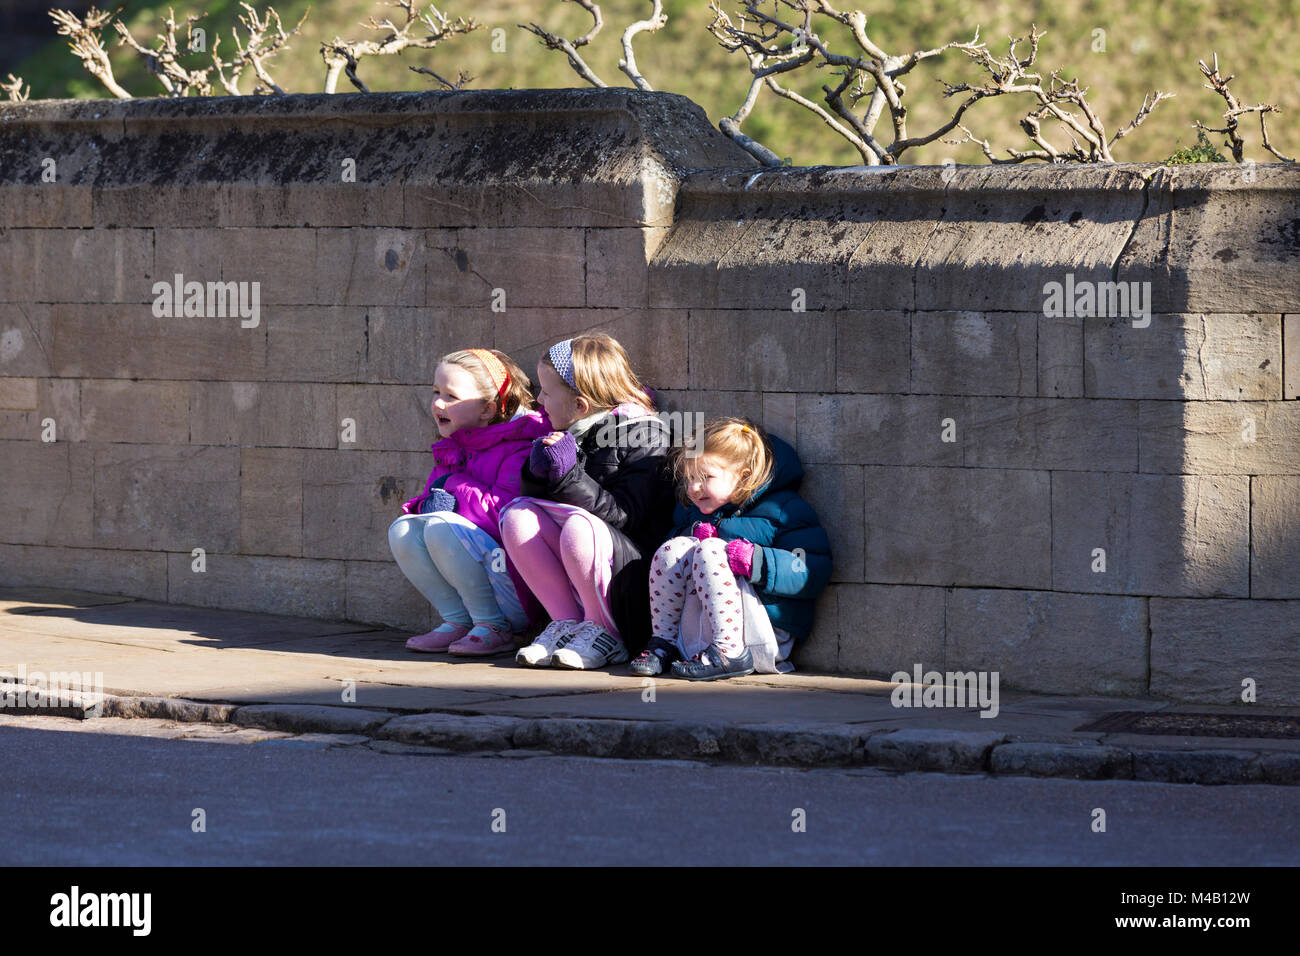 Drei junge Mädchen im Alter von 3, 5, 7 Jahre warten in der Kälte, während ihr Vater Fotos nimmt für ein Bild bestand Bibliothek wie Alamy. Schloss Windsor, Großbritannien Stockfoto